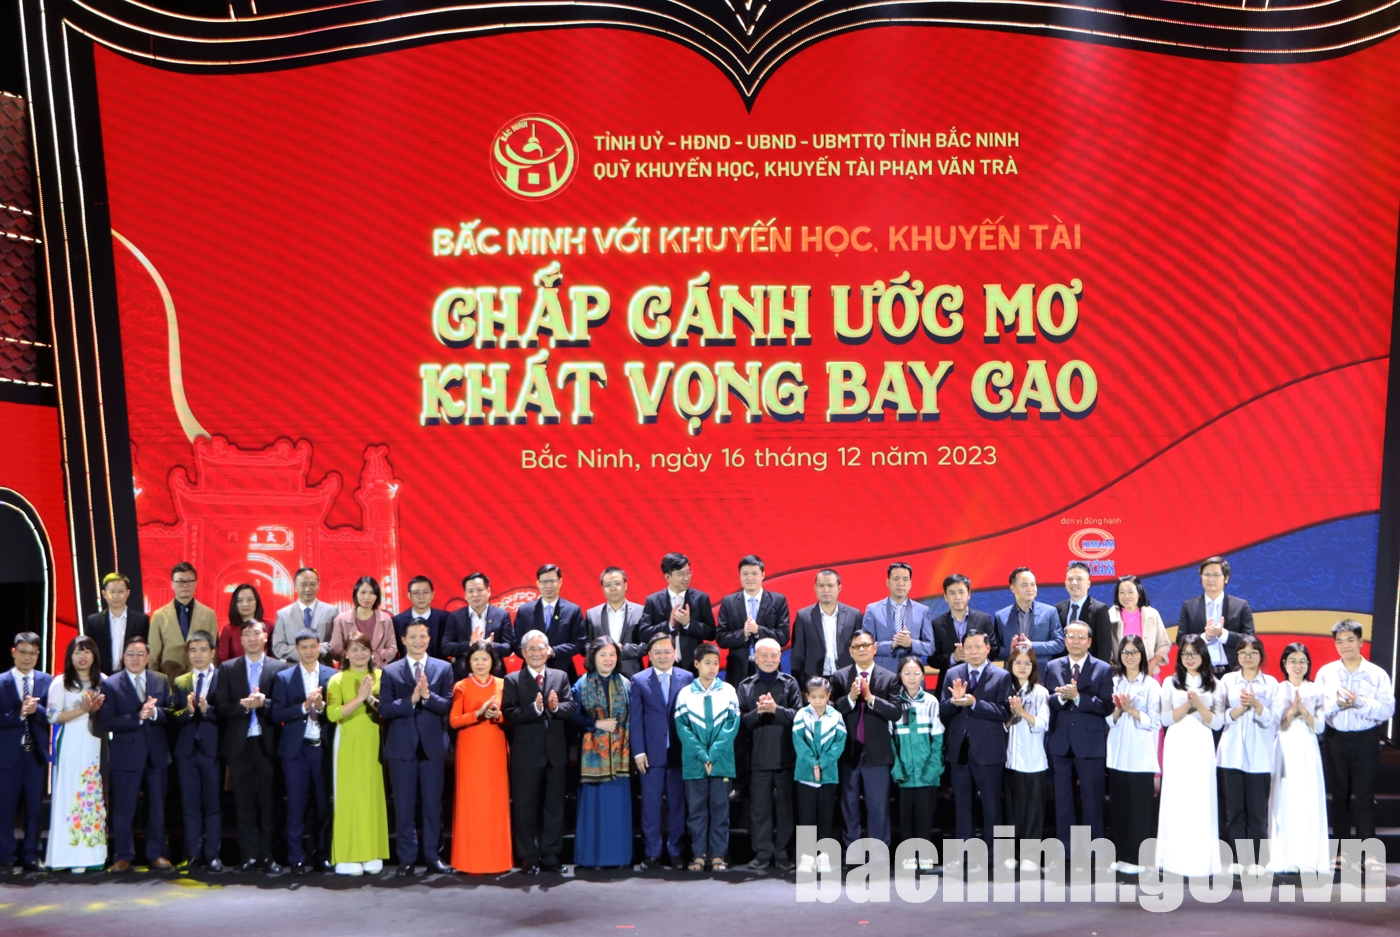 Bắc Ninh với khuyến học, khuyến tài năm 2023